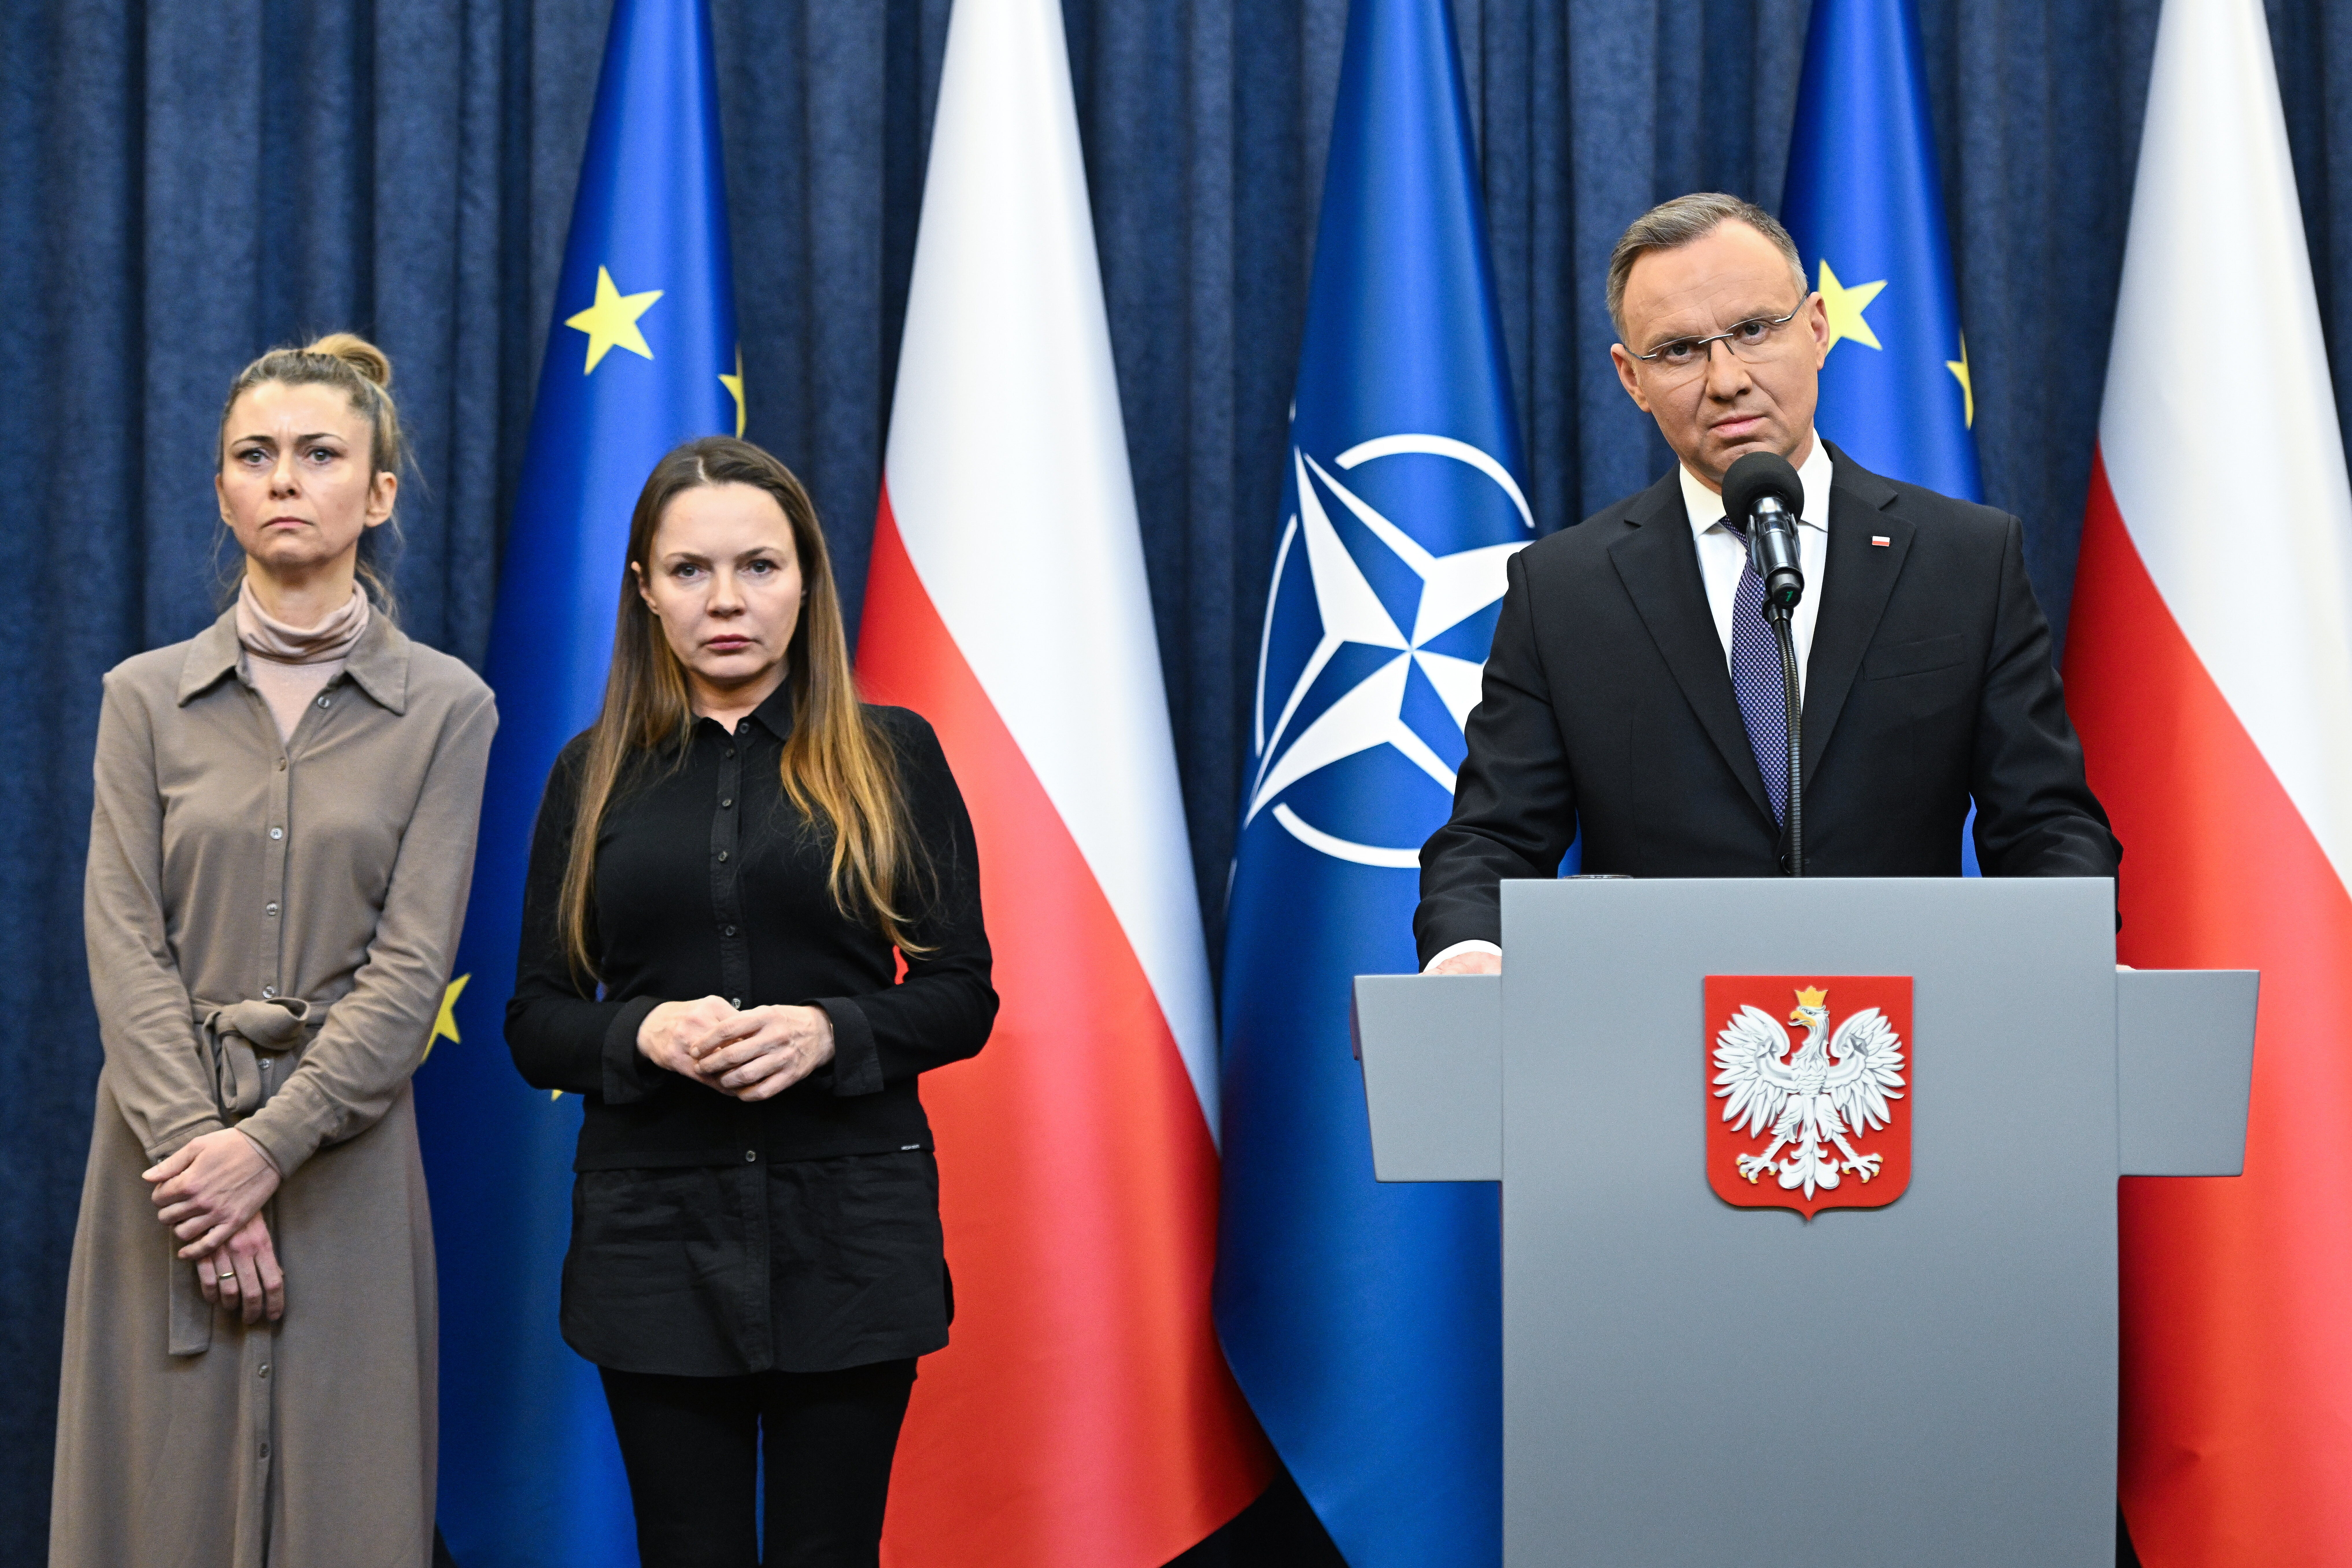 Andrzej Duda: Der Präsident Polens spielt mit dem Feuer